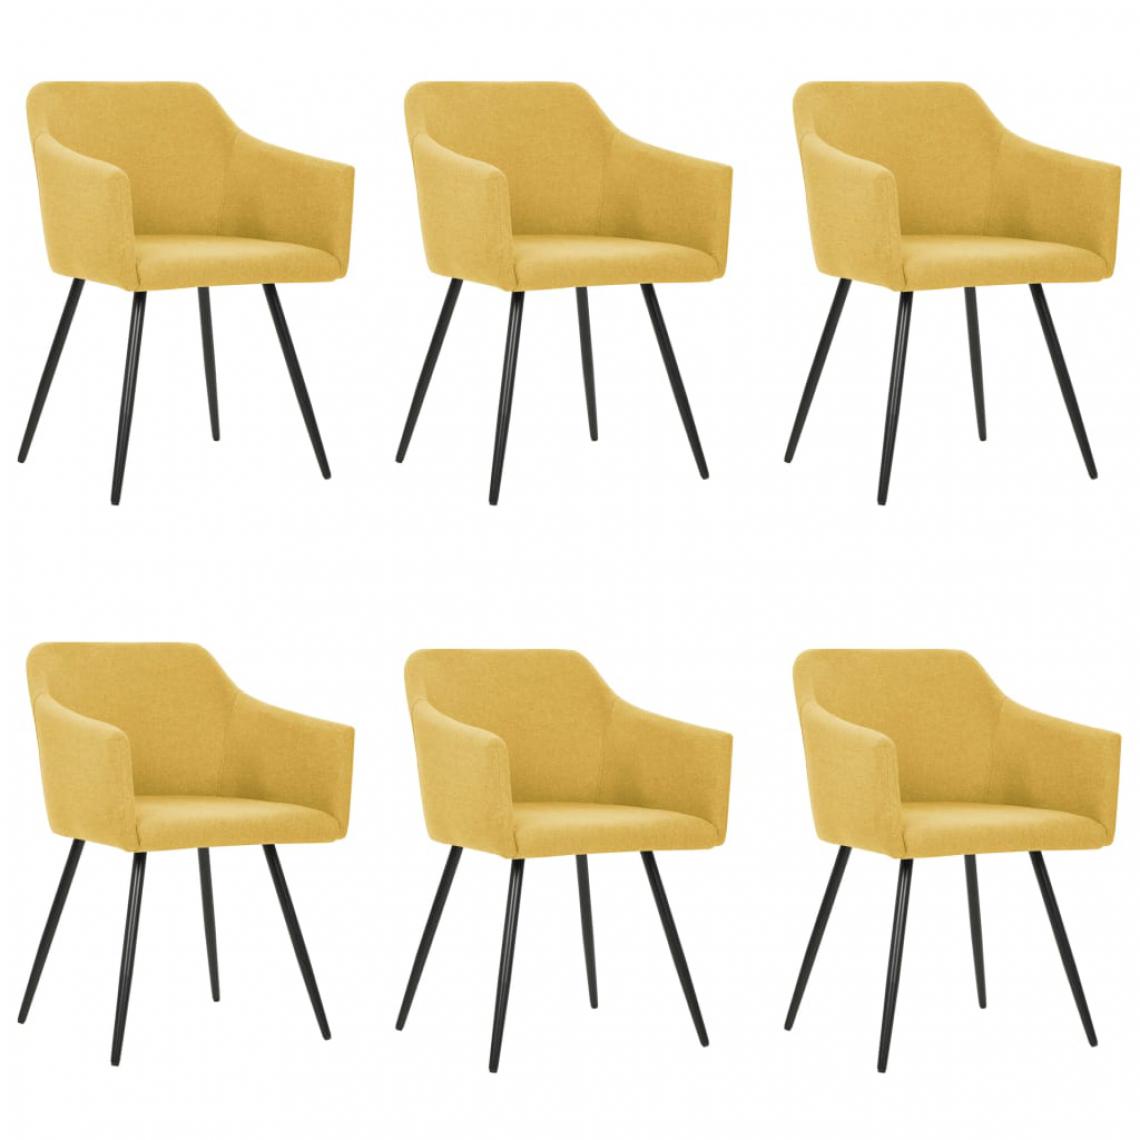 Icaverne - Distingué Fauteuils et chaises serie Accra Chaises de salle à manger 6 pcs Jaune Tissu - Chaises